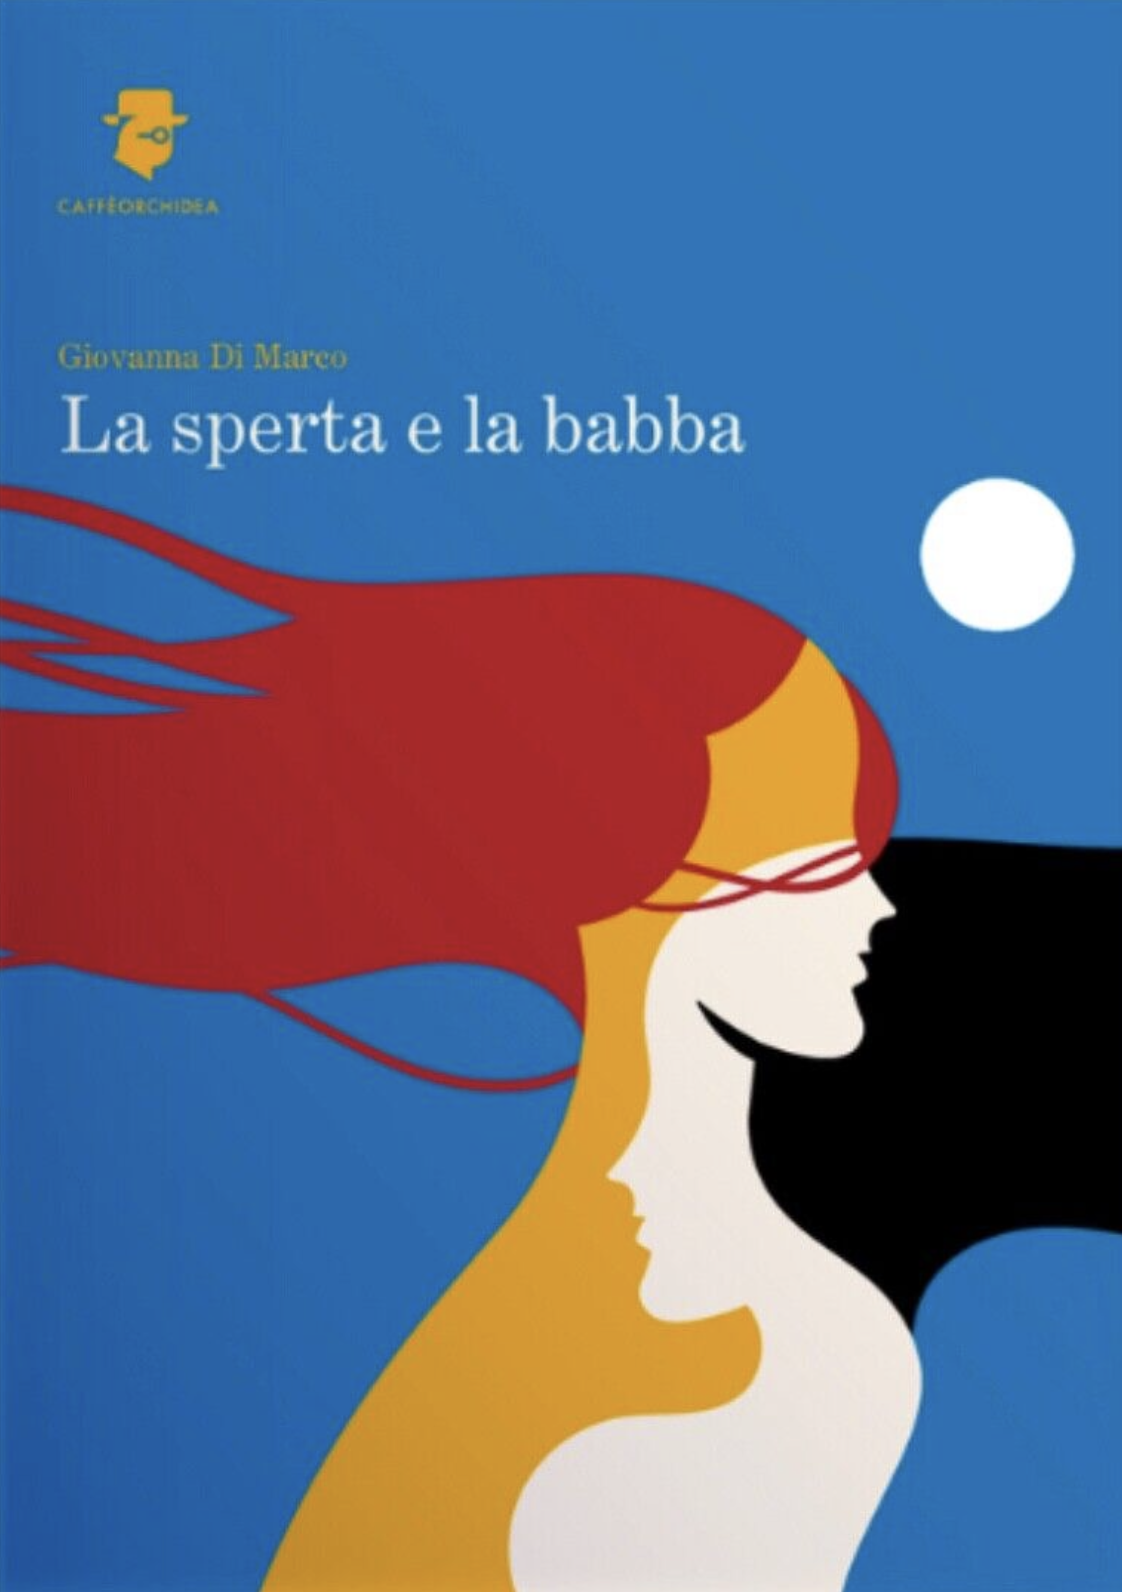 Clicca sulla cover per acquistare il romanzo di Giovanna Di Marco a un prezzo speciale